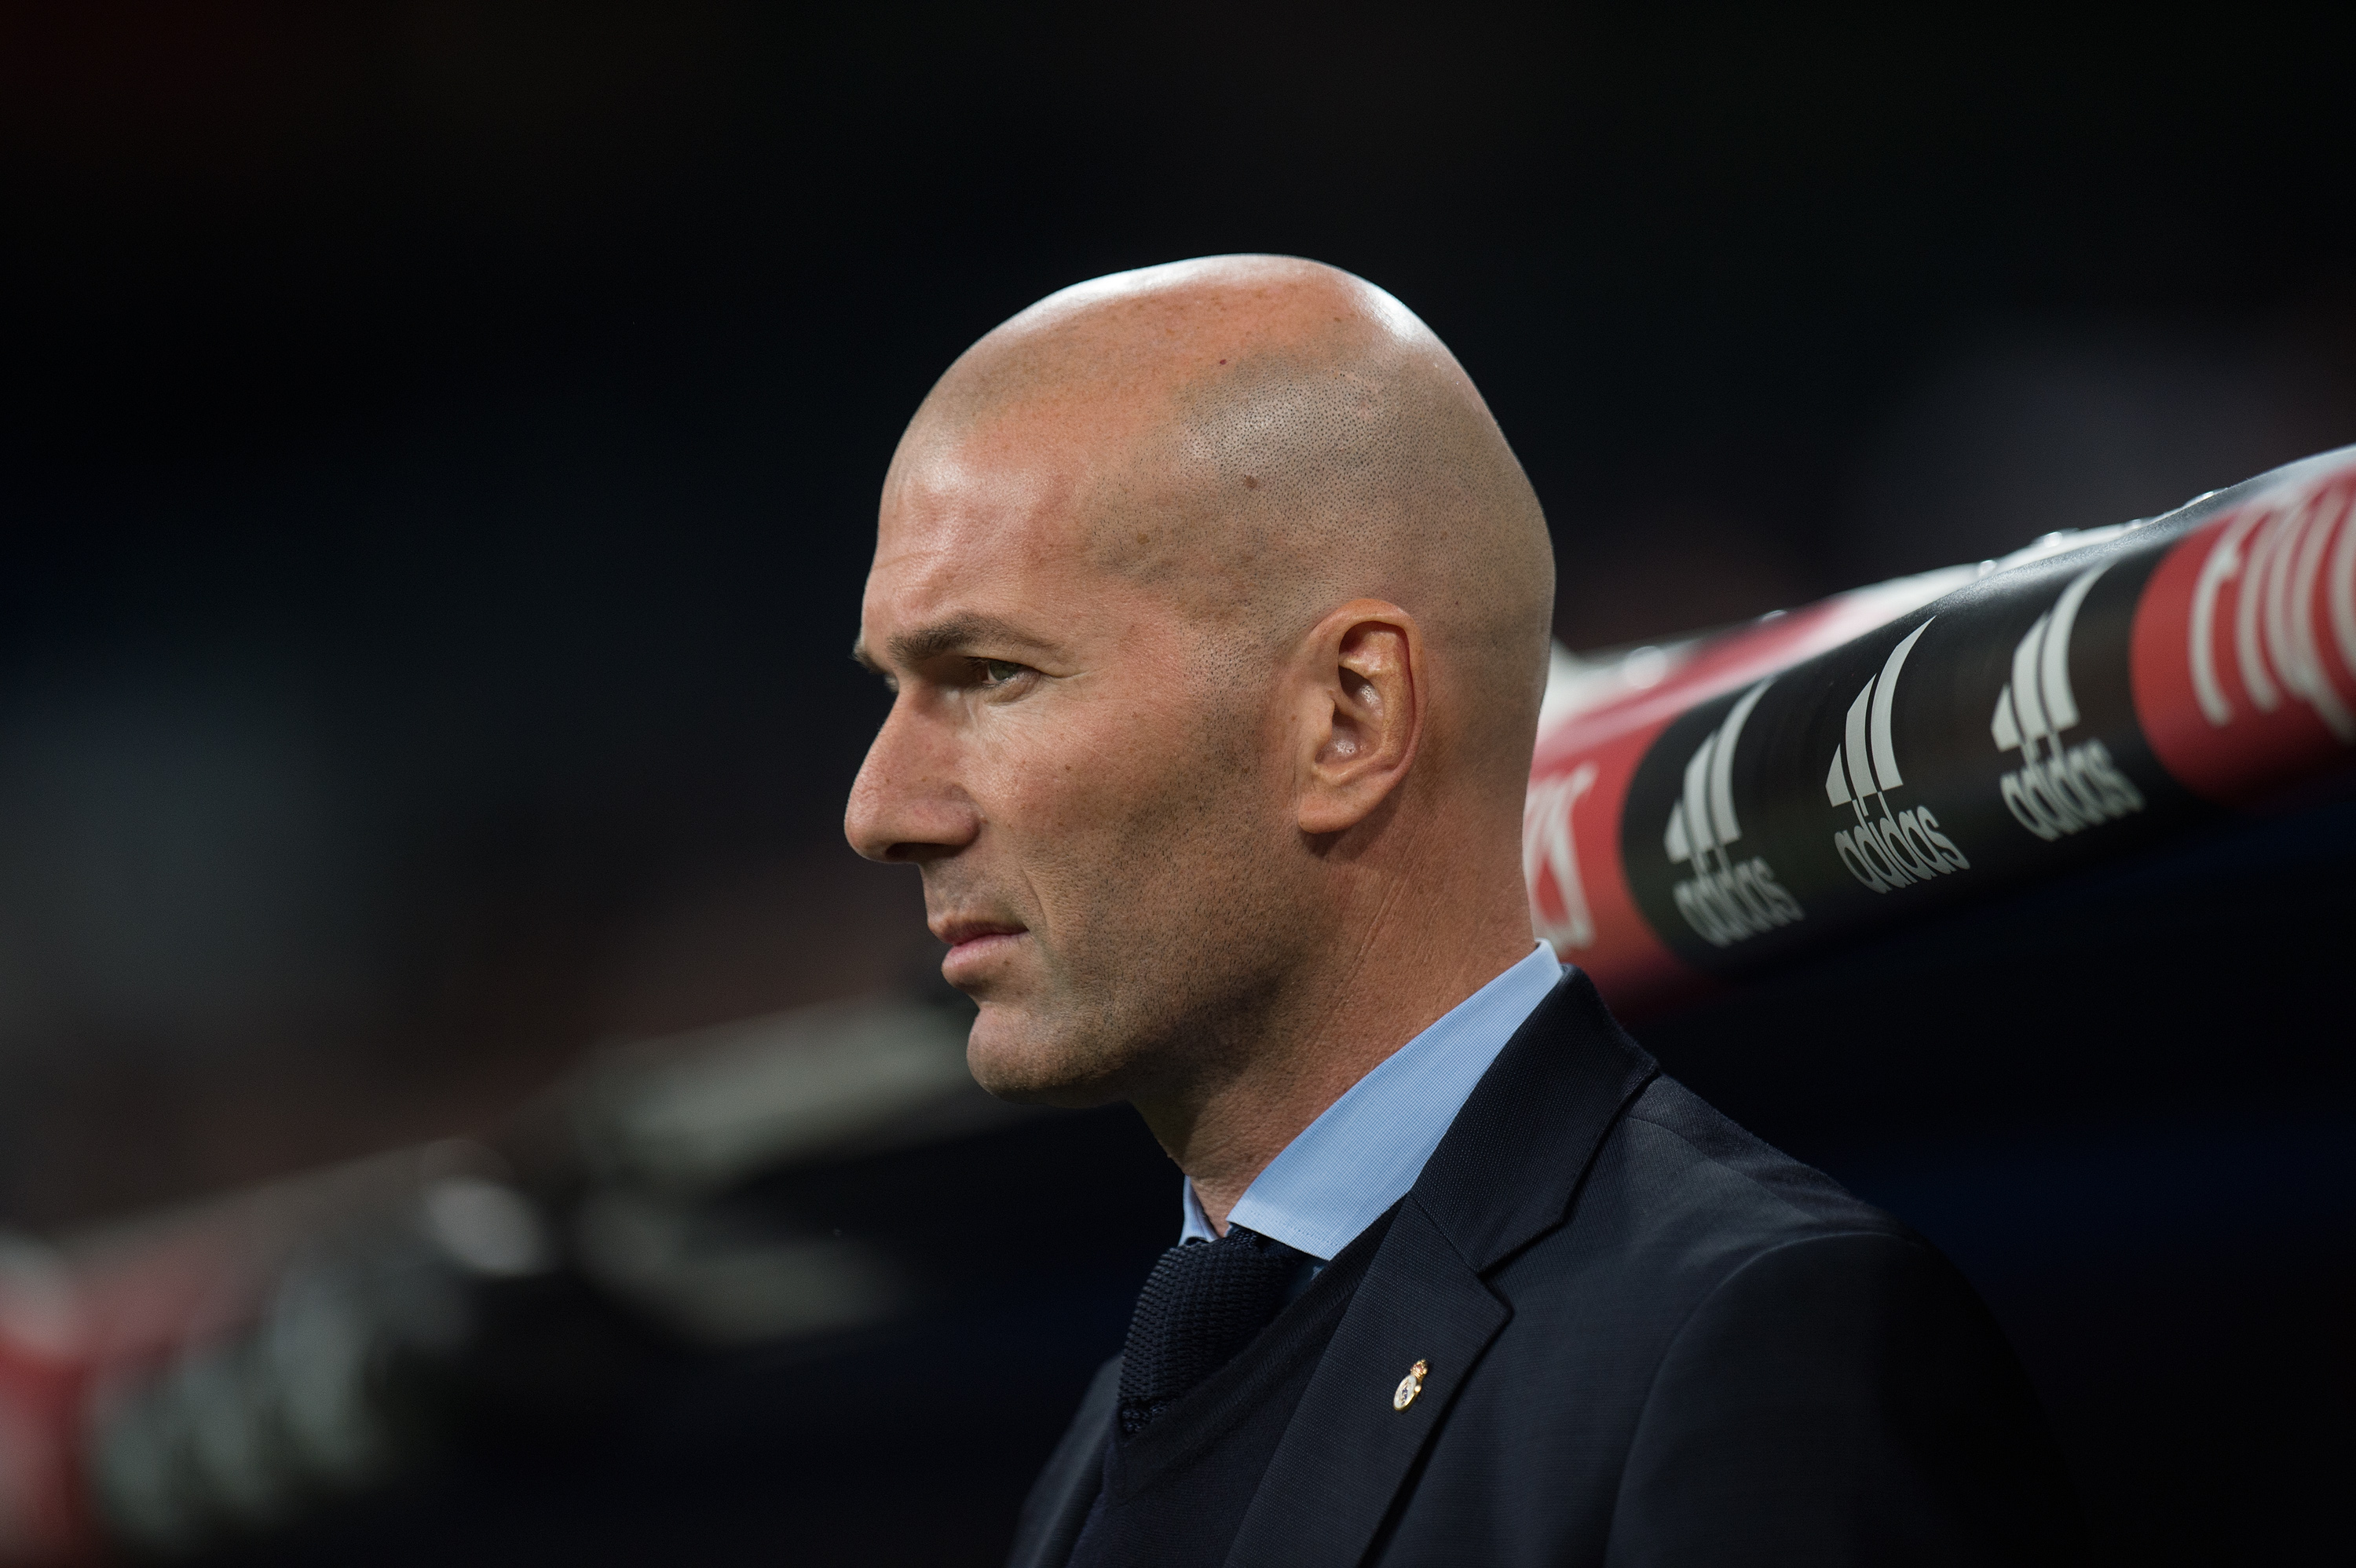 Eder Militao donne à Zidane un mal de tête avant le match retour de Chelsea alors que le Real Madrid revient à la victoire